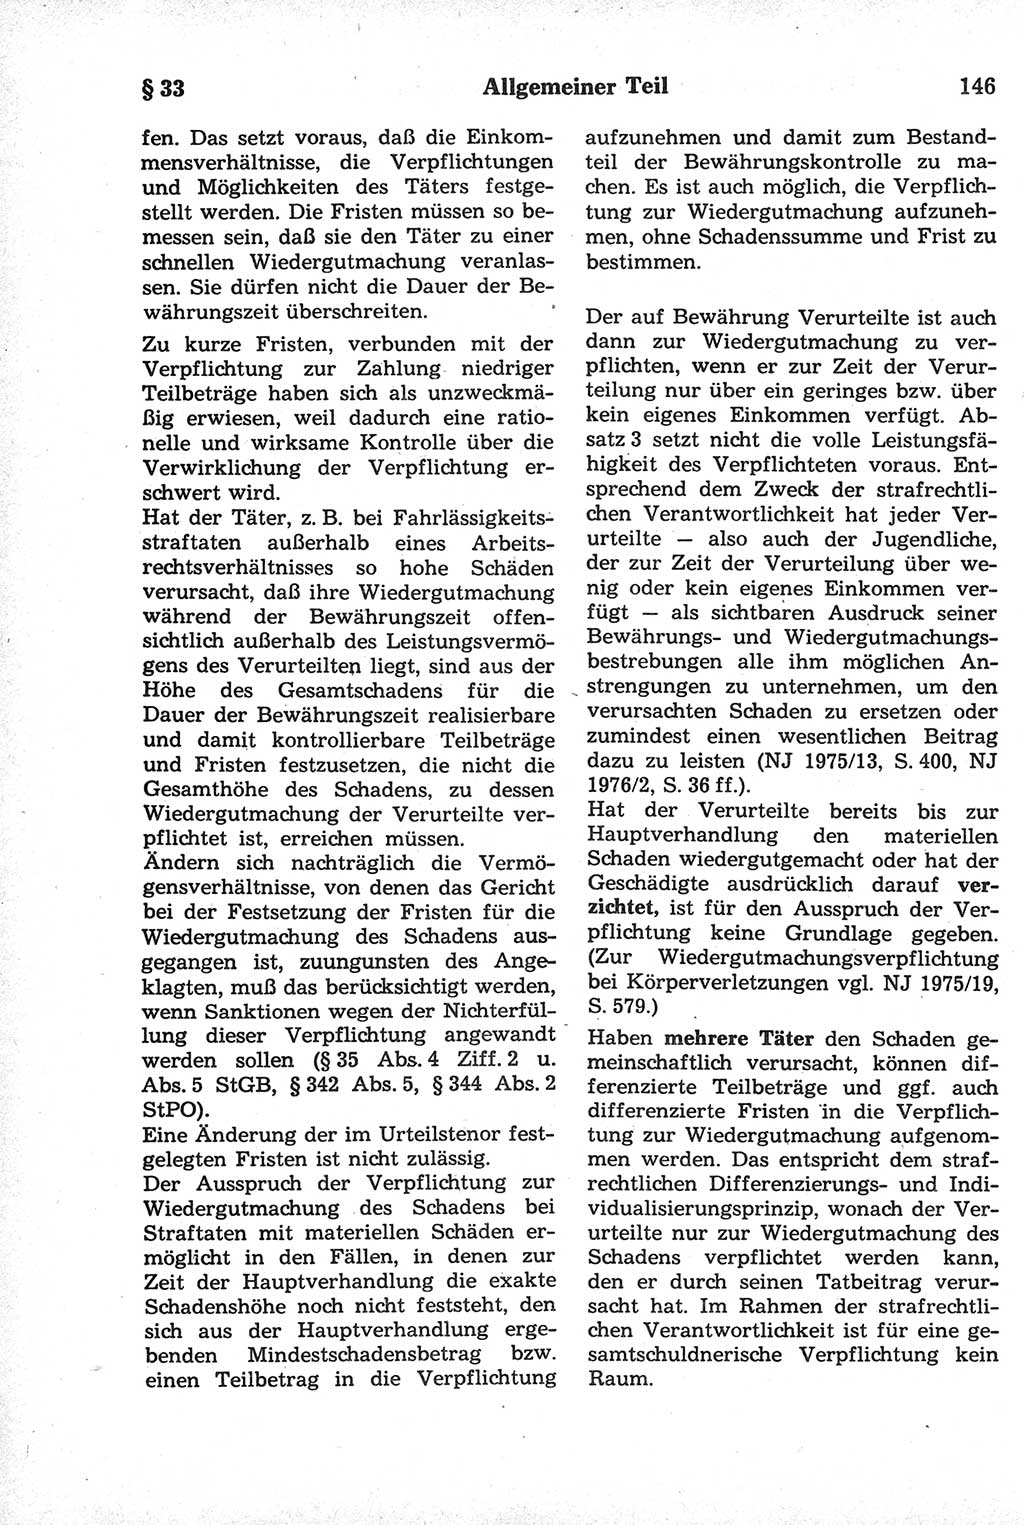 Strafrecht der Deutschen Demokratischen Republik (DDR), Kommentar zum Strafgesetzbuch (StGB) 1981, Seite 146 (Strafr. DDR Komm. StGB 1981, S. 146)